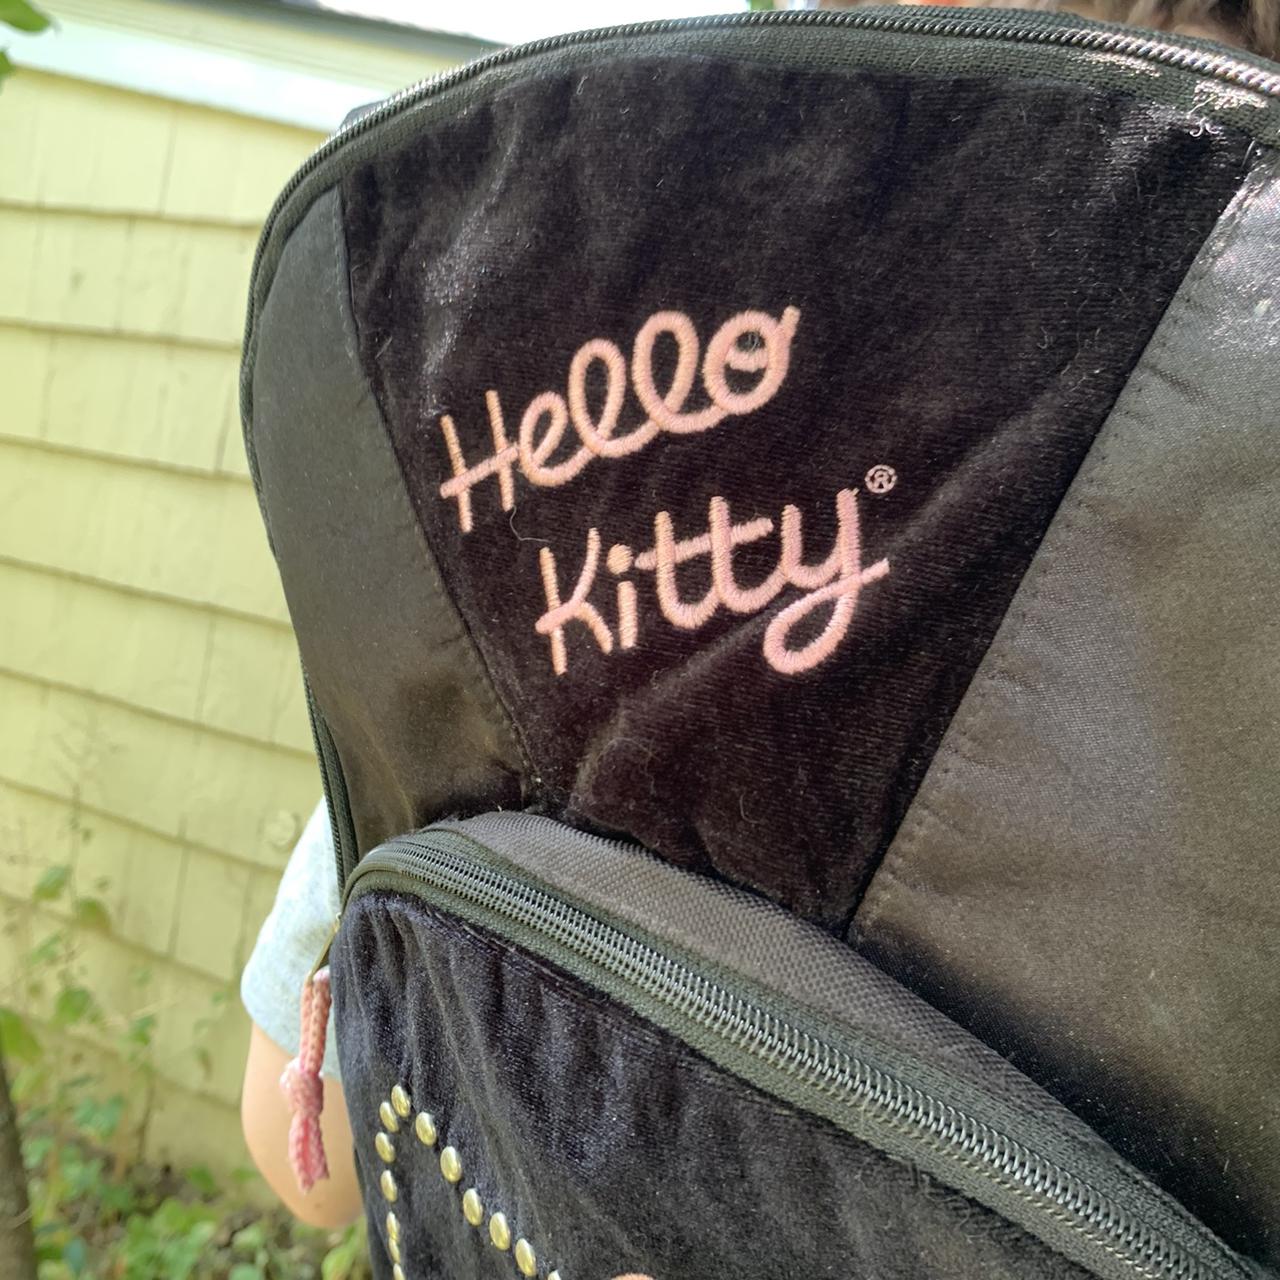 Hello Kitty Velvet Backpacks for Women